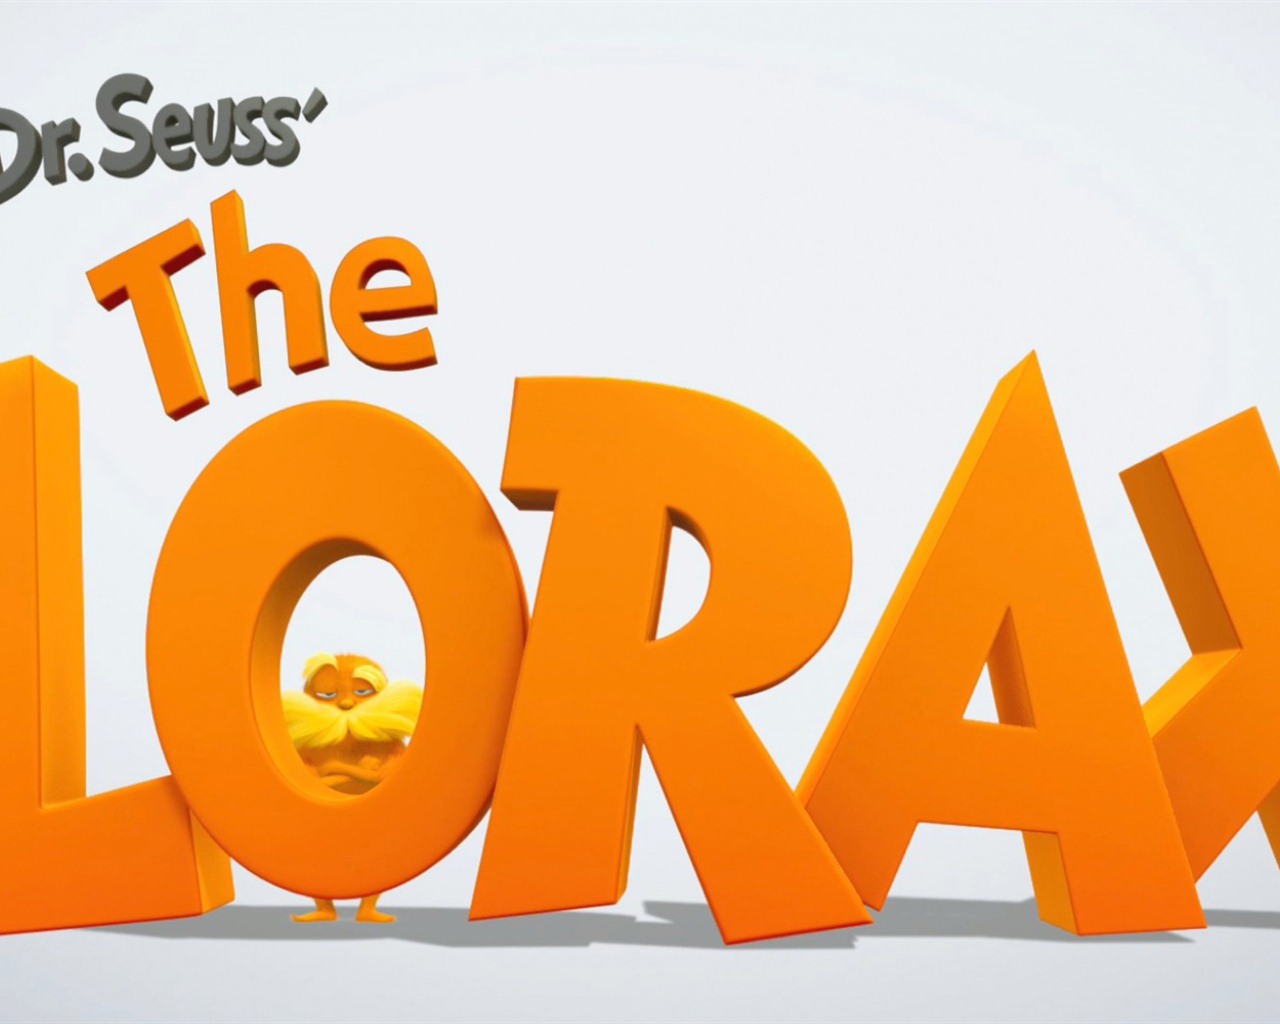 El Dr. Seuss Lorax fondos de pantalla de alta definición #1 - 1280x1024